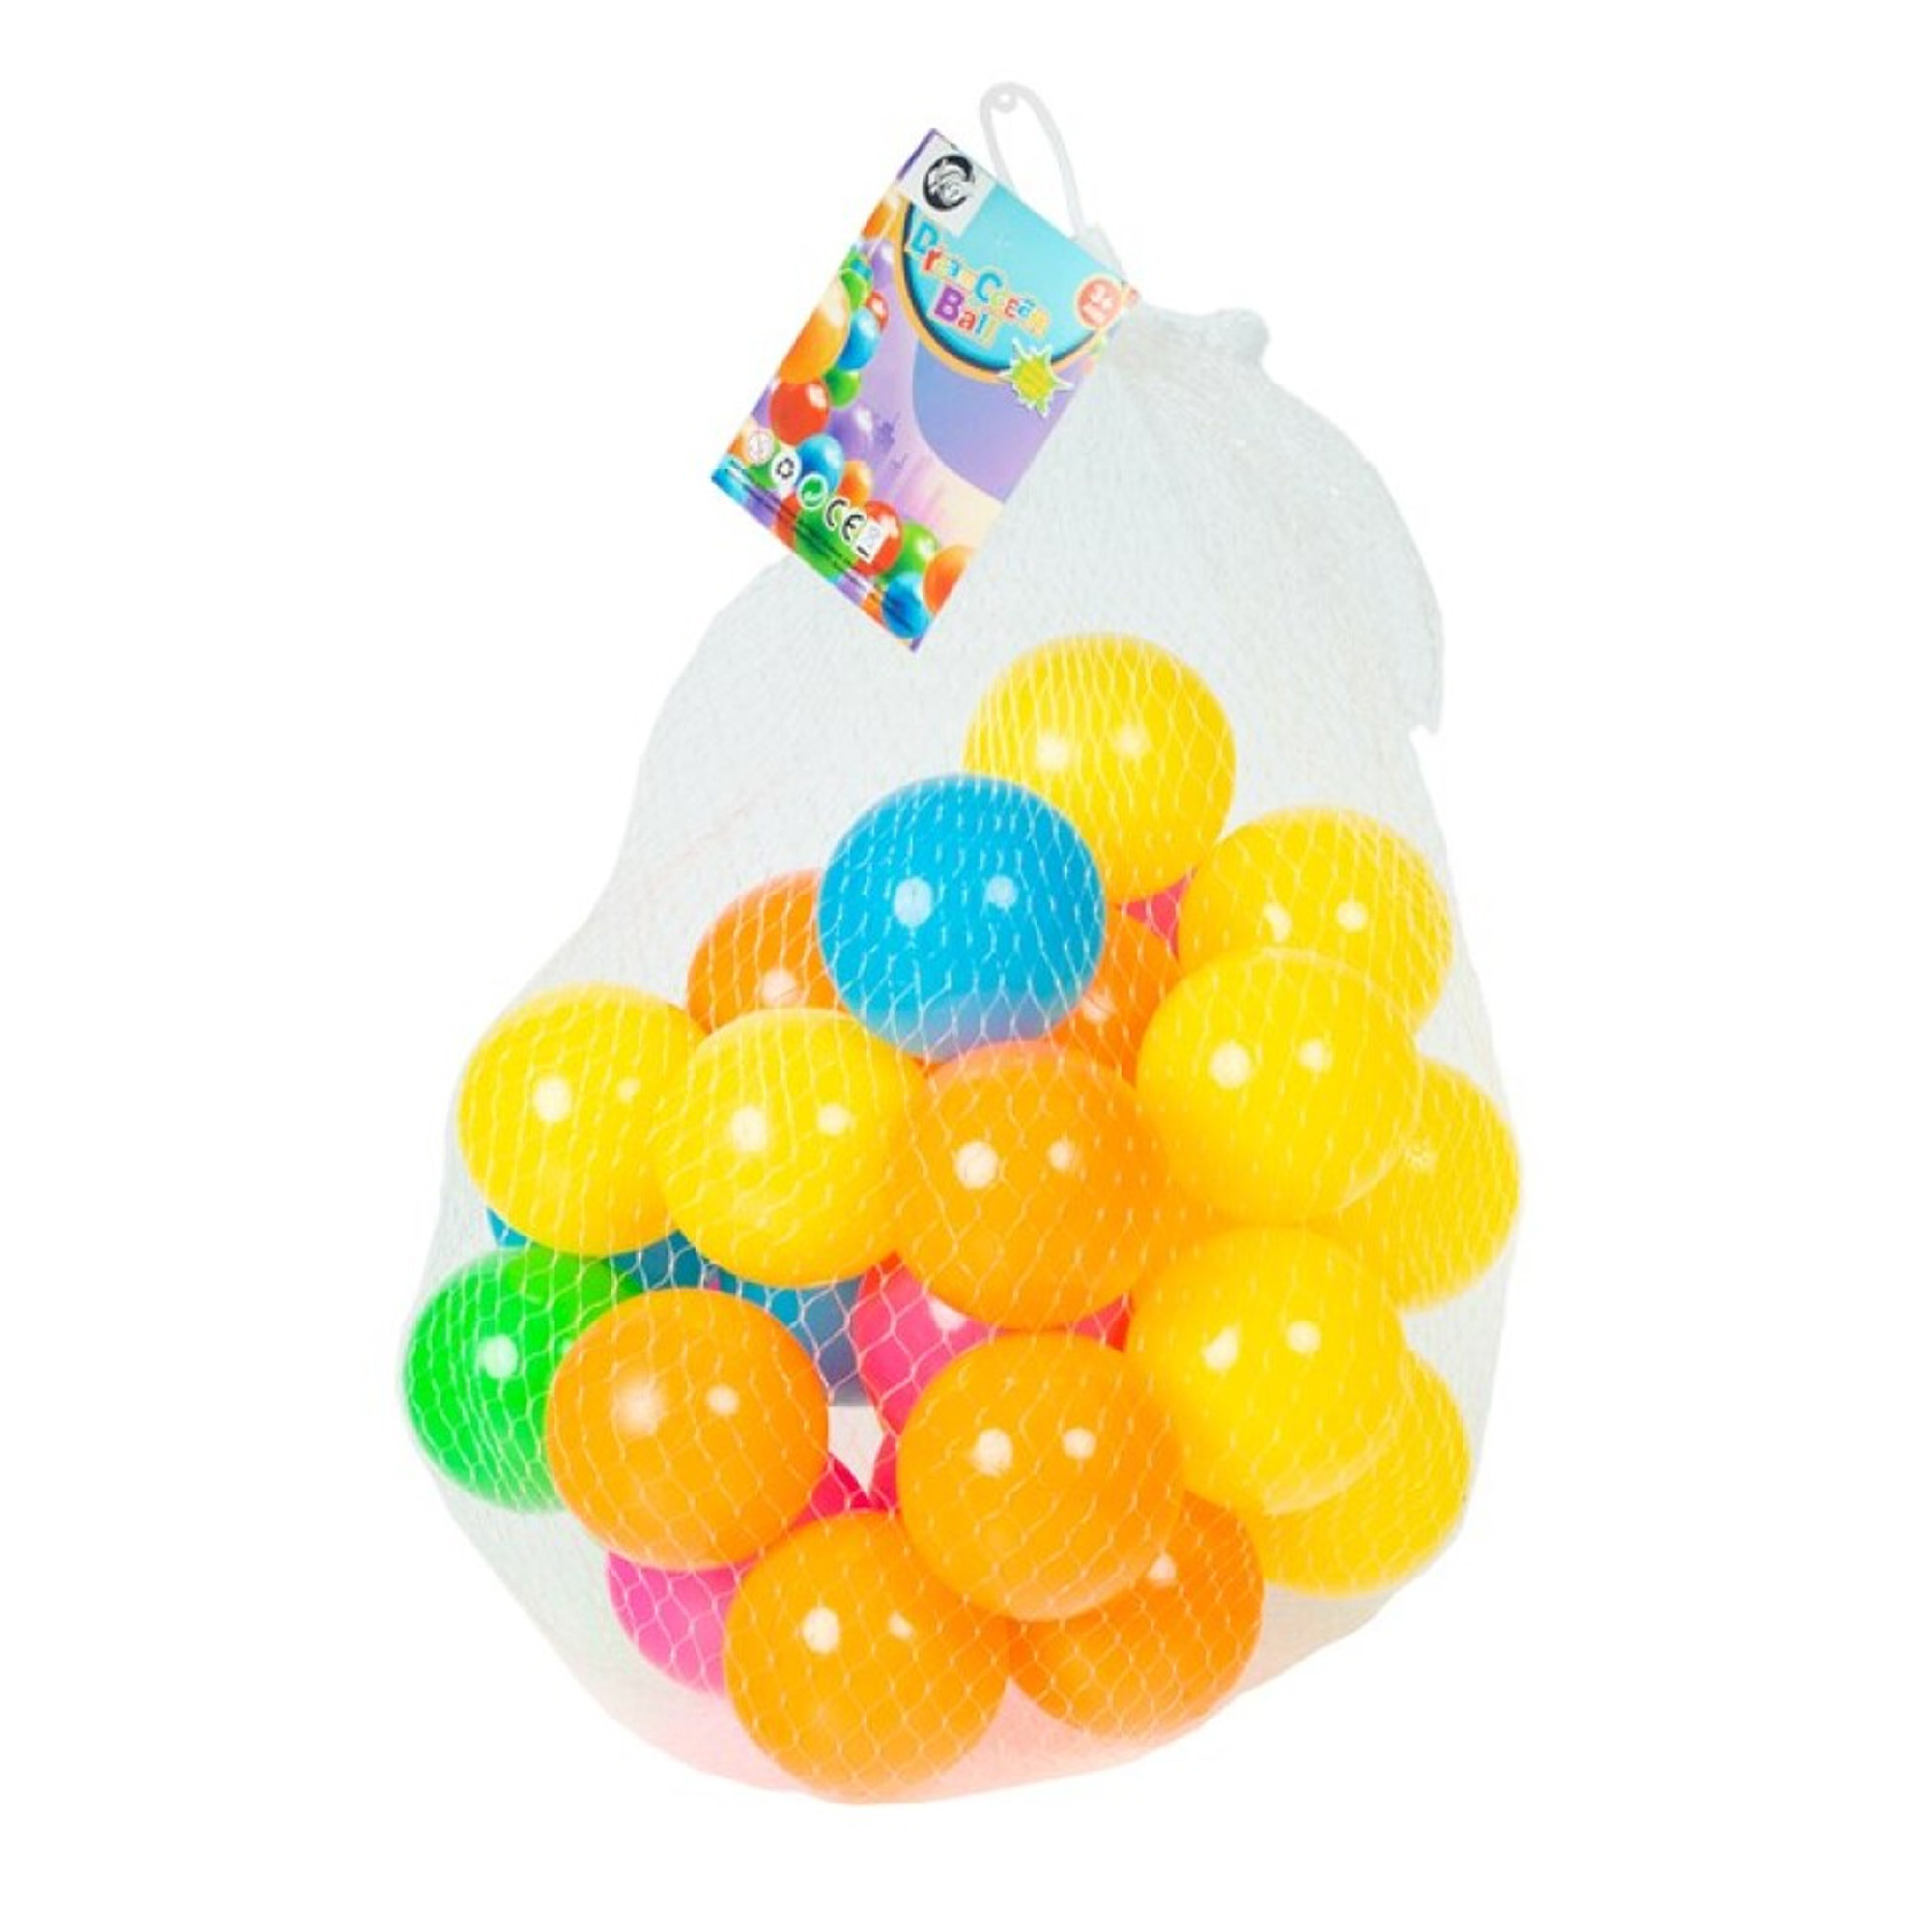 Kunststof ballenbak ballen felle vrolijke kleuren 30x stuks ca 6 cm